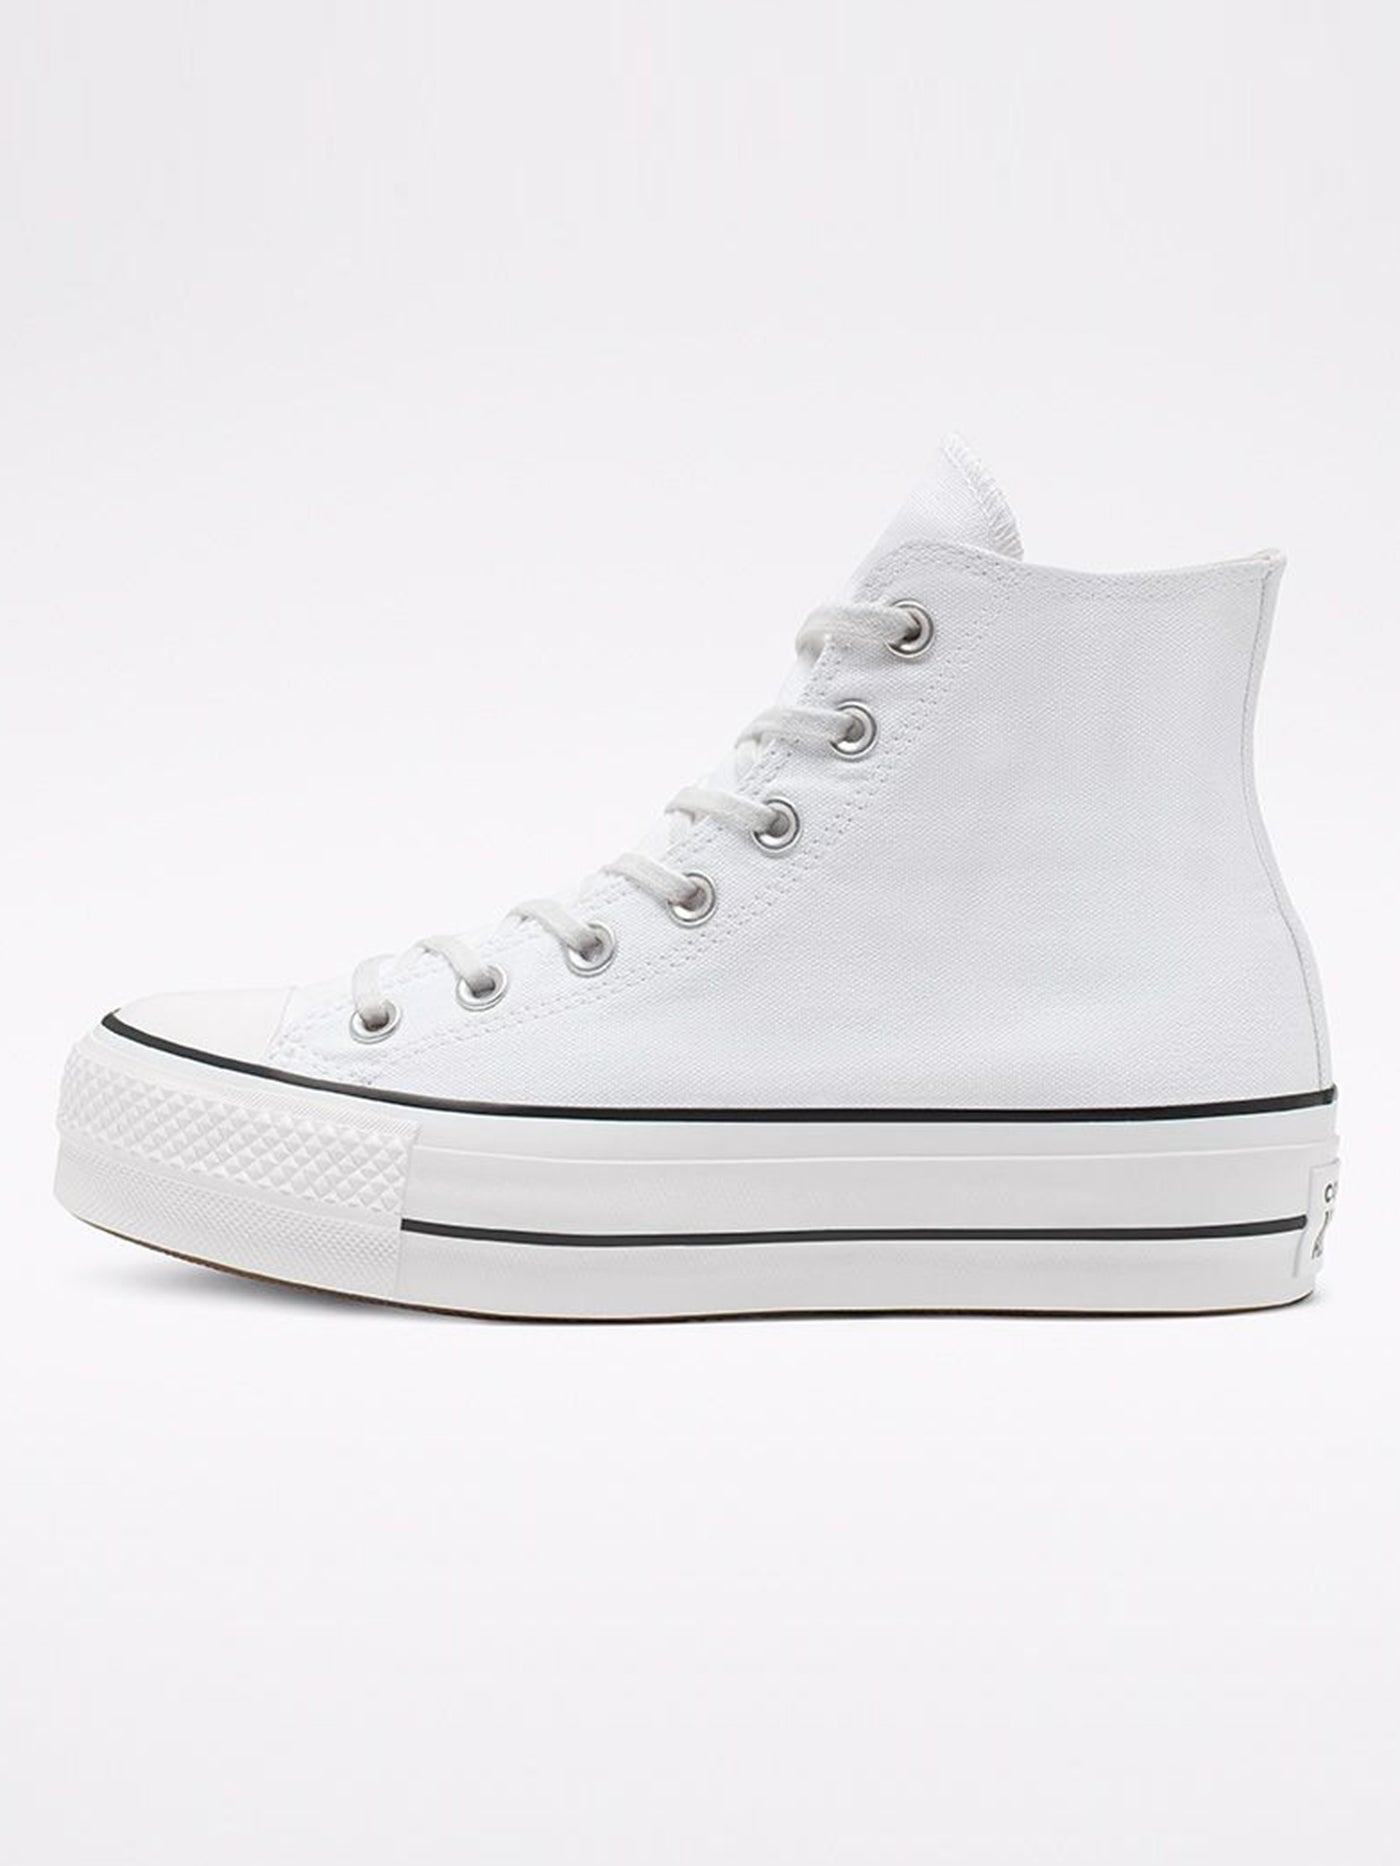 Converse Chuck Taylor AS Platform Hi White/Black/White Shoes